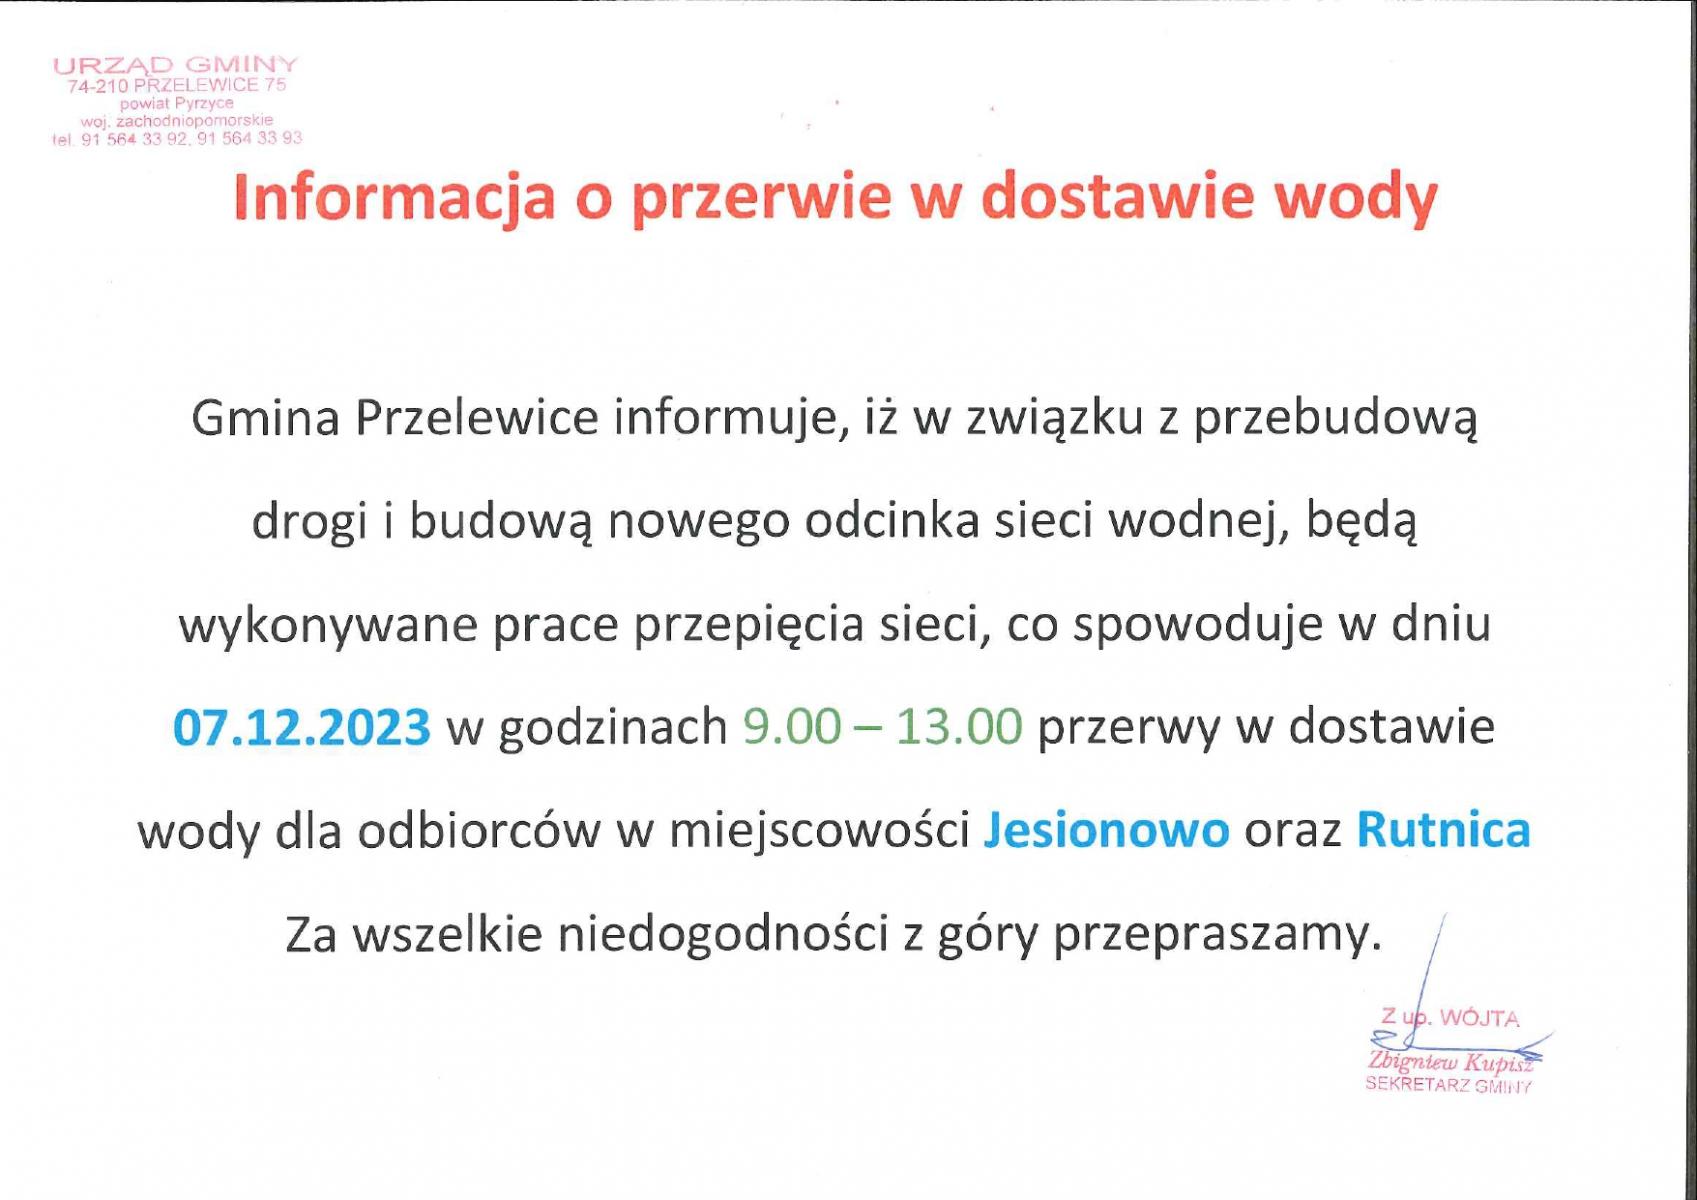 Informacja o braku wody w Jesionowie i Rutnicy w dniu 07.12.2023 r.